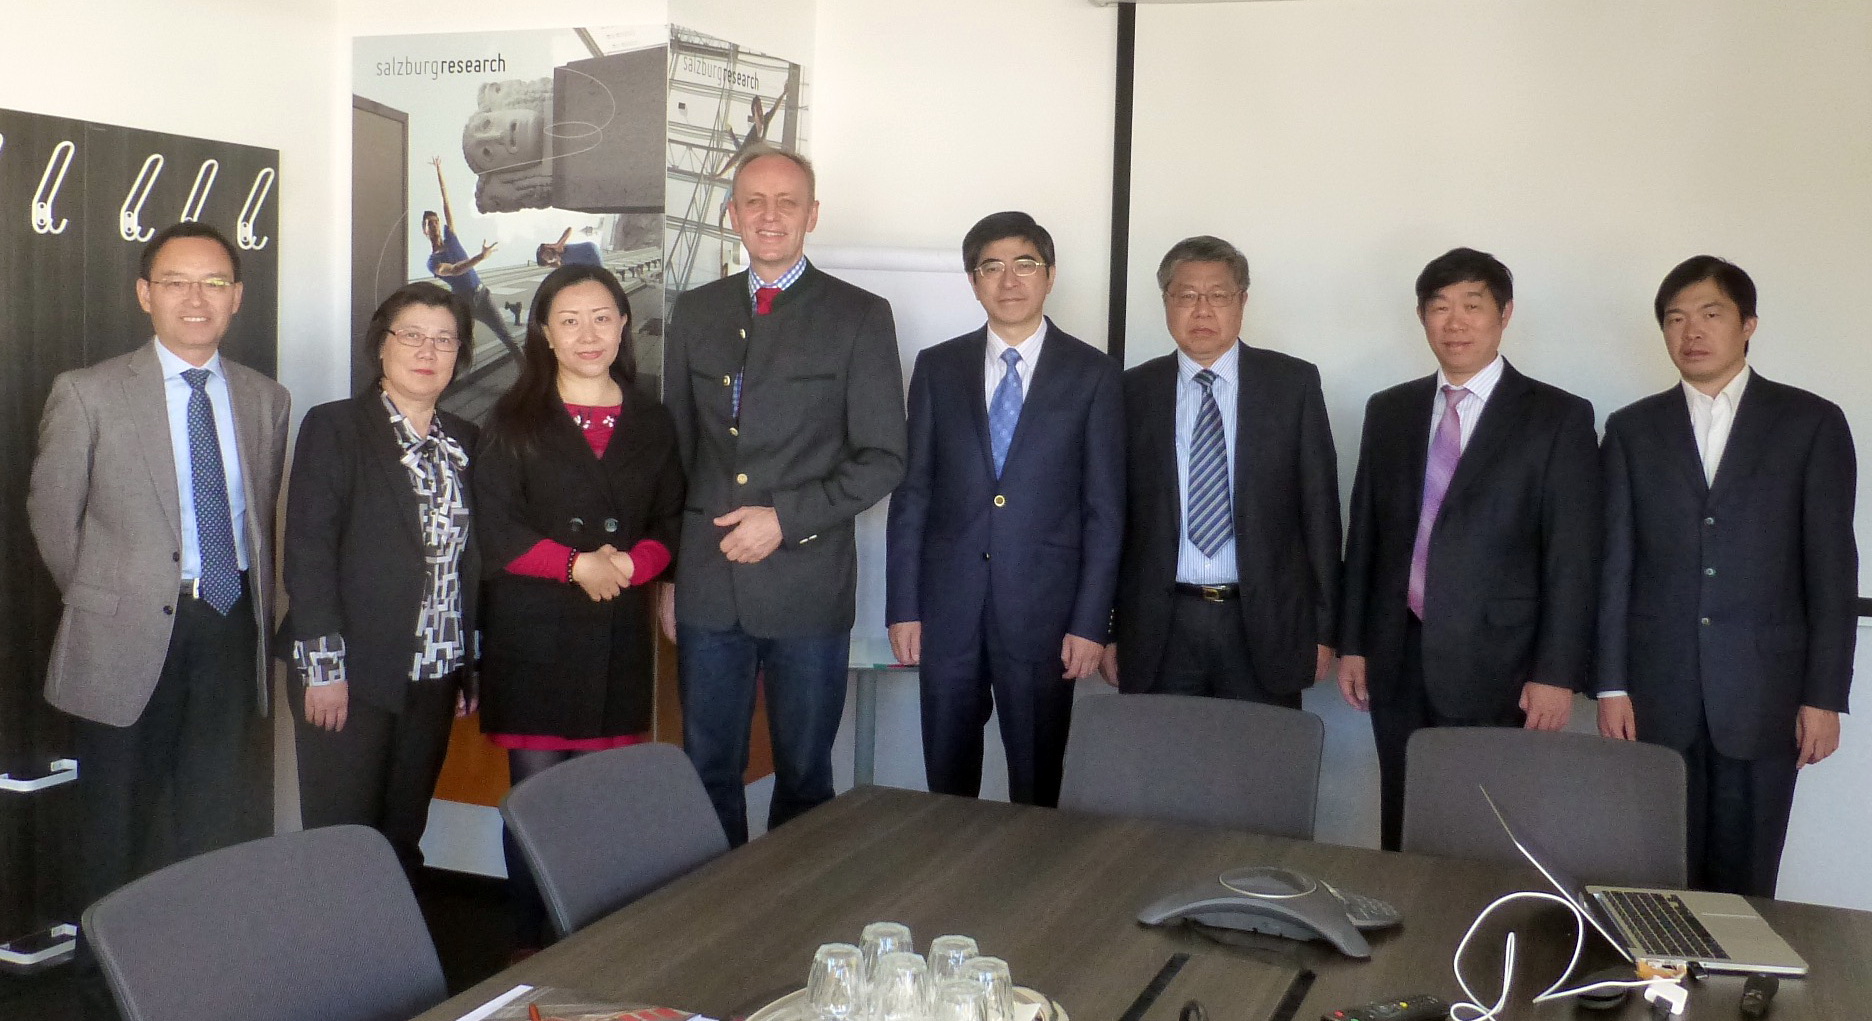 shanghai-delegation bei salzburg research